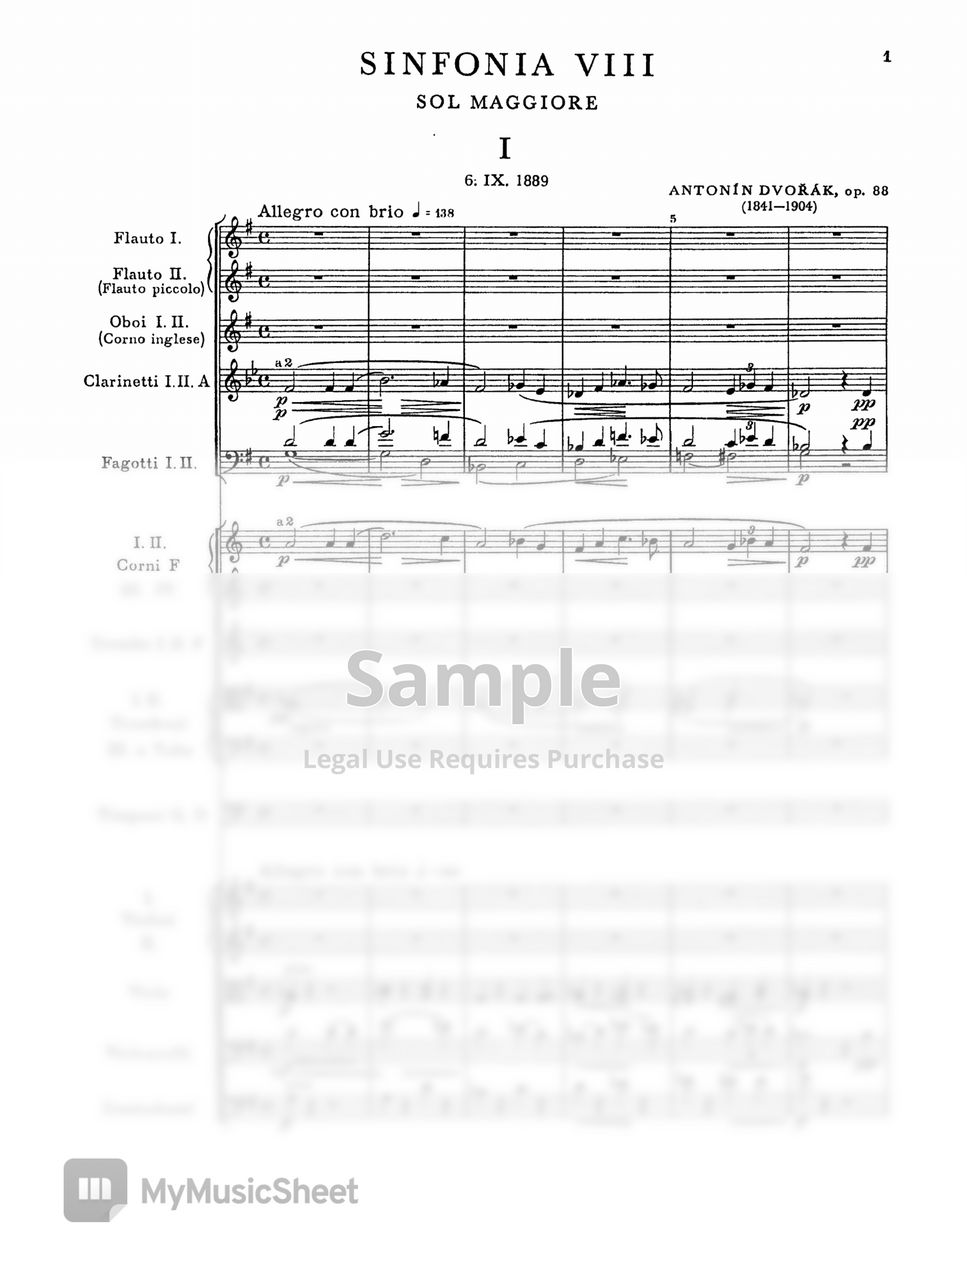 A. Dvorak - Symphony No. 8 in G major by Original Score